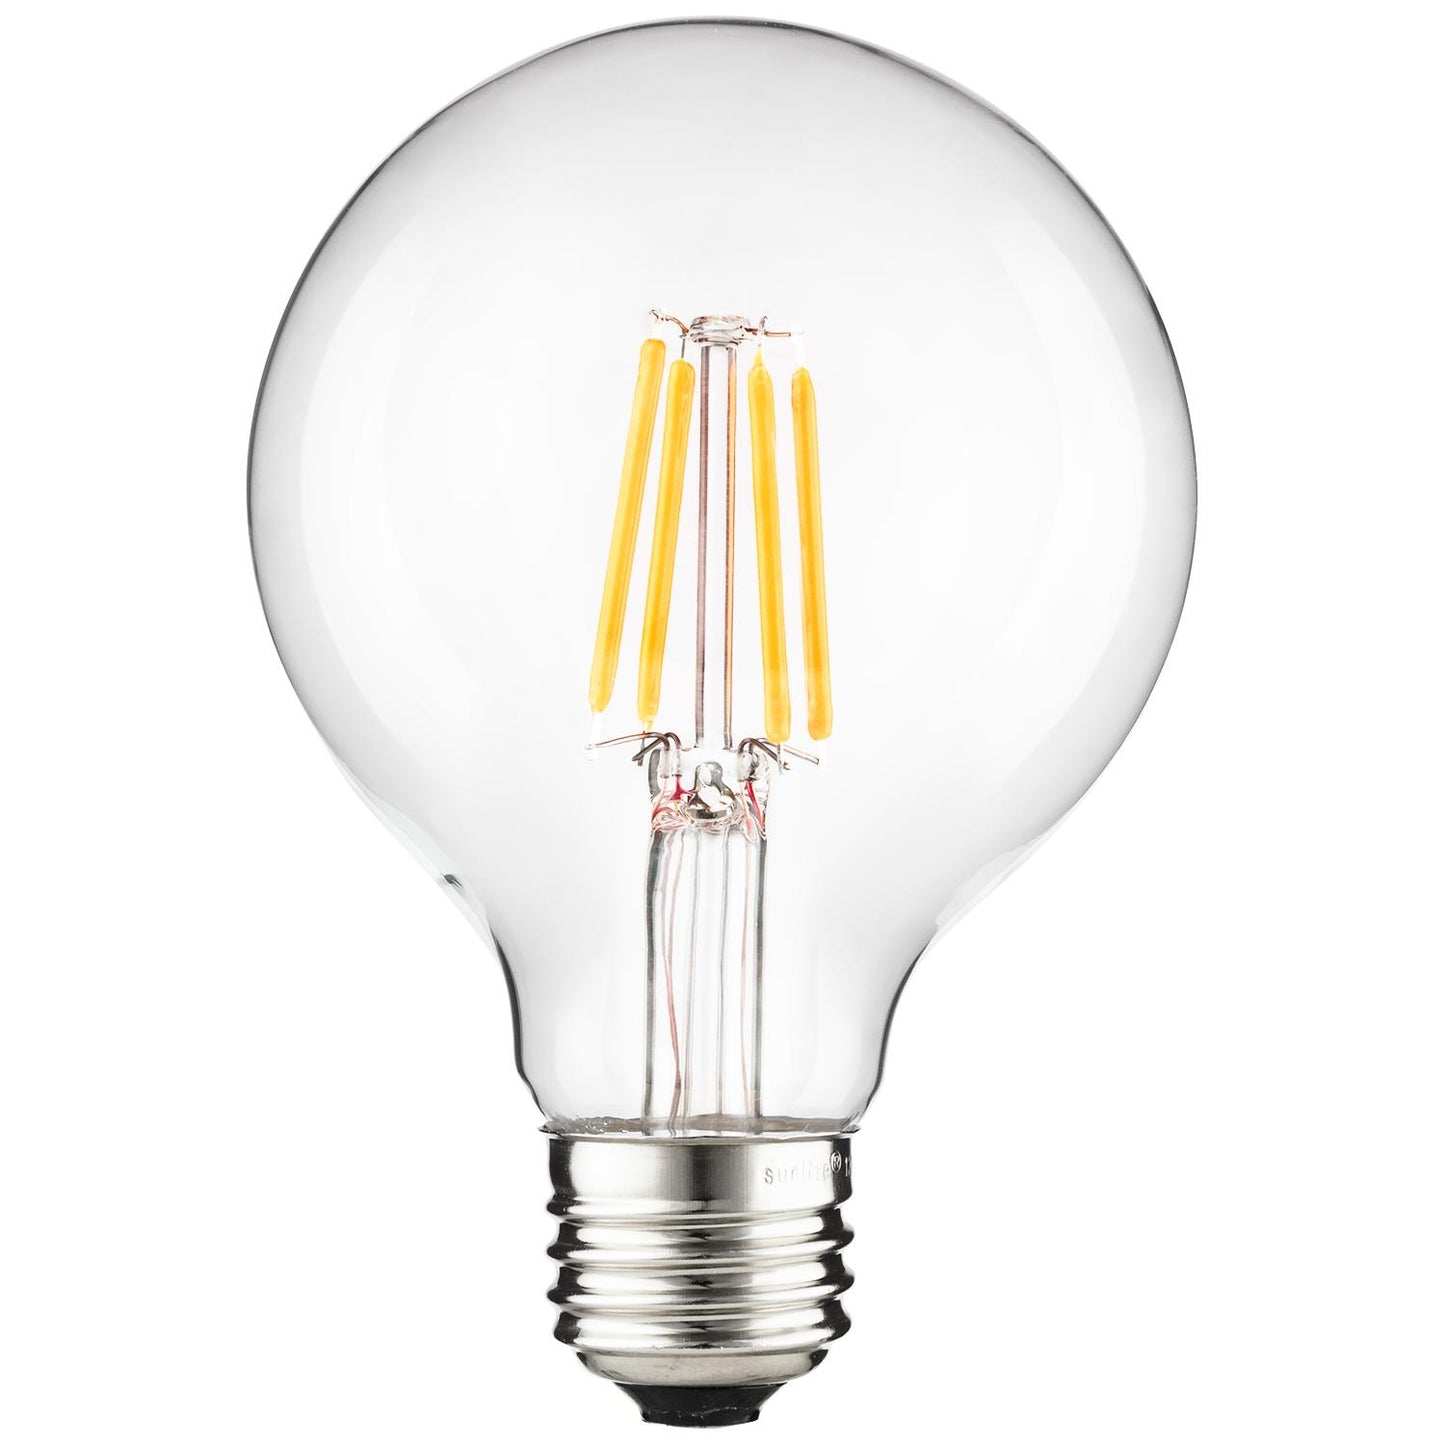 Sunlite 81116 LED Filament G25 Globe 6-Watt (75 Watt Equivalent) Clear Dimmable Light Bulb, 4000K - Cool White